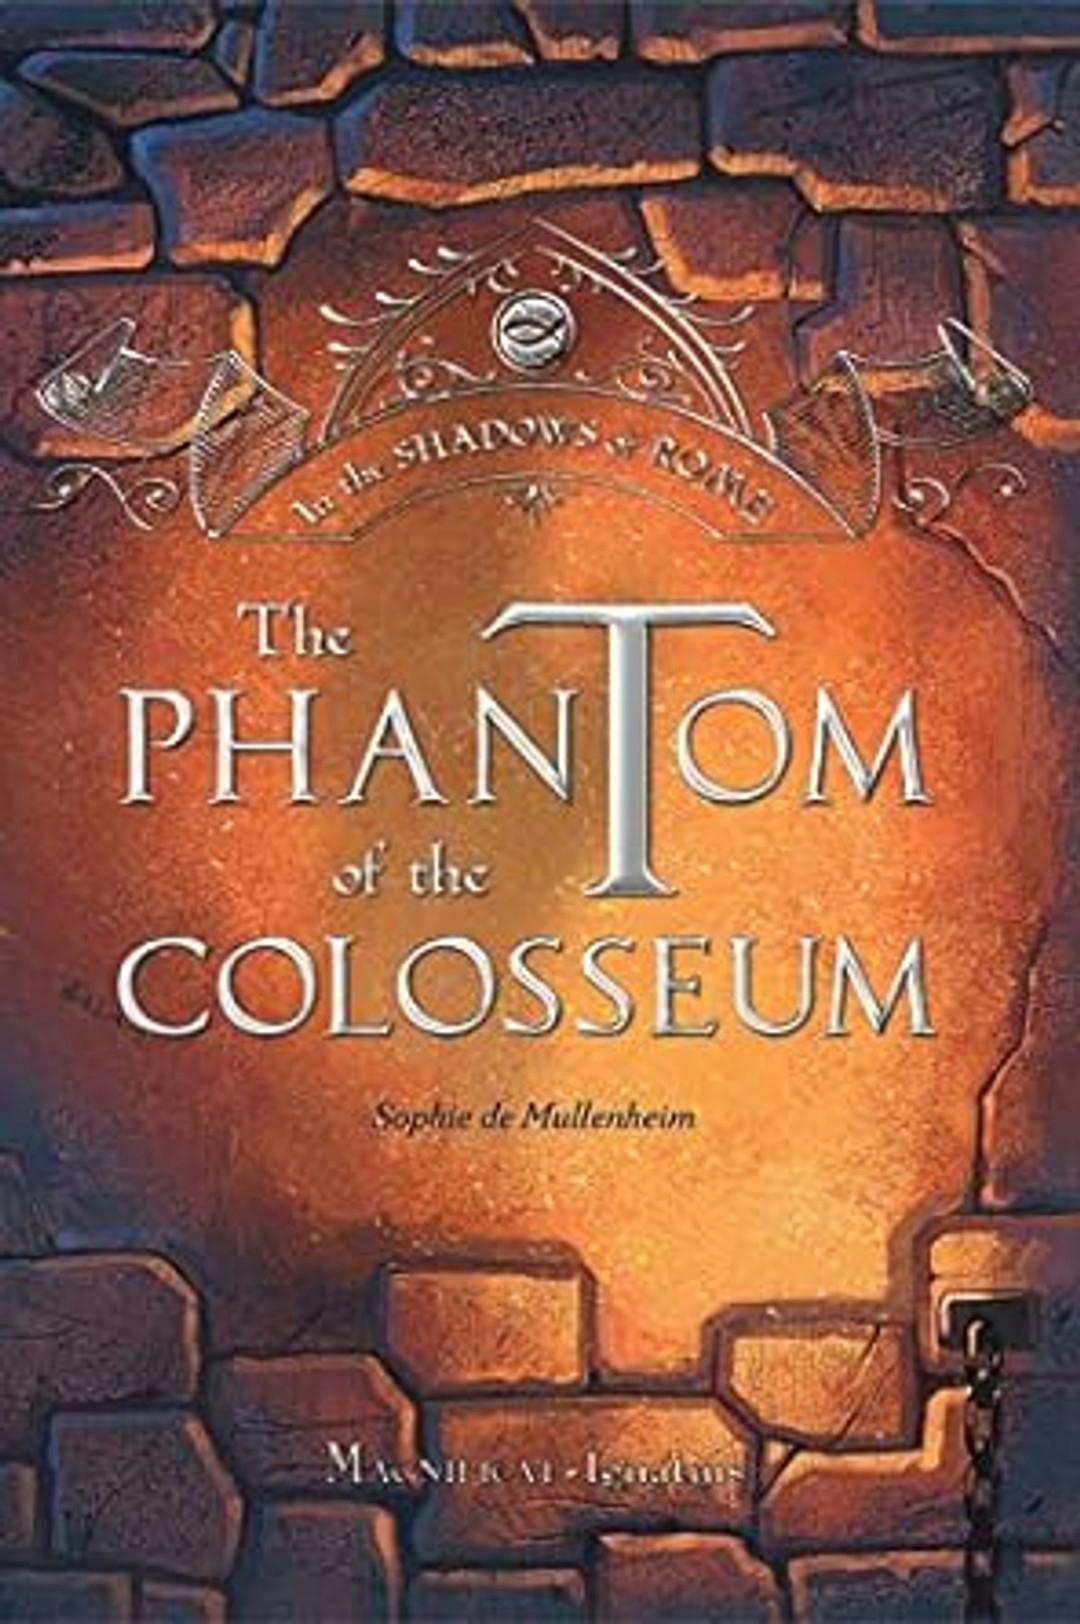 The Phantom of the Coloseum